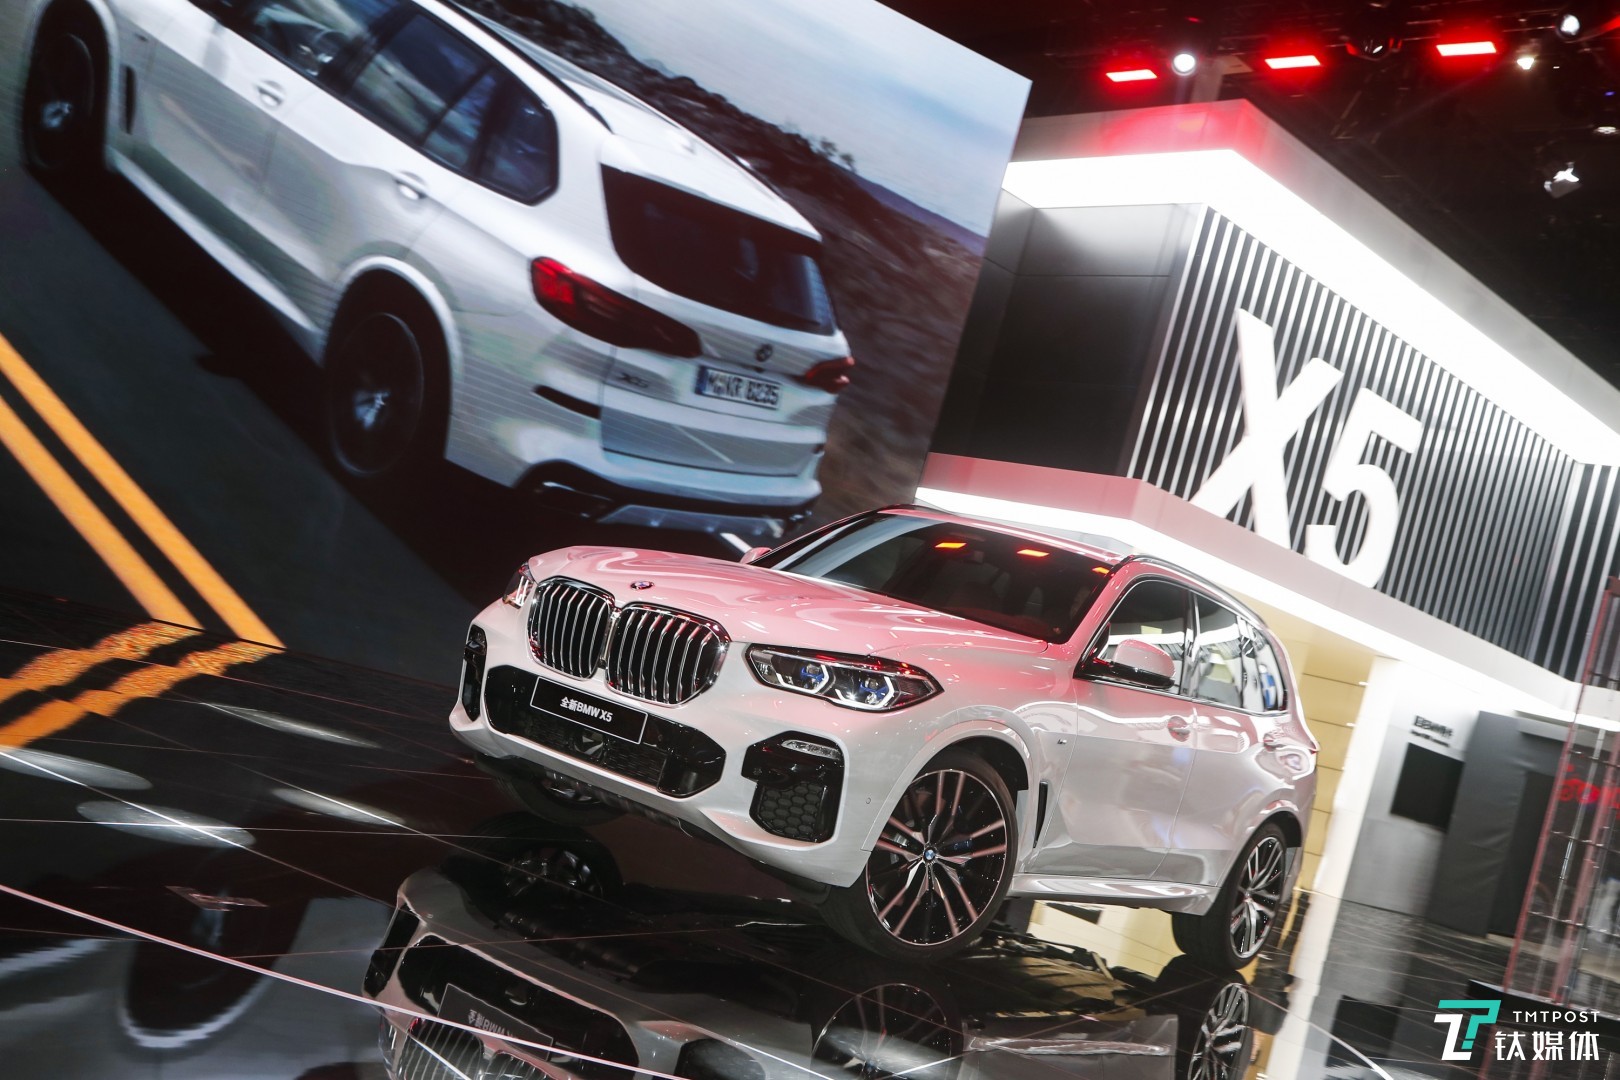 全新 BMW X5 的推出，让宝马进一步强化了 SUV 产品实力